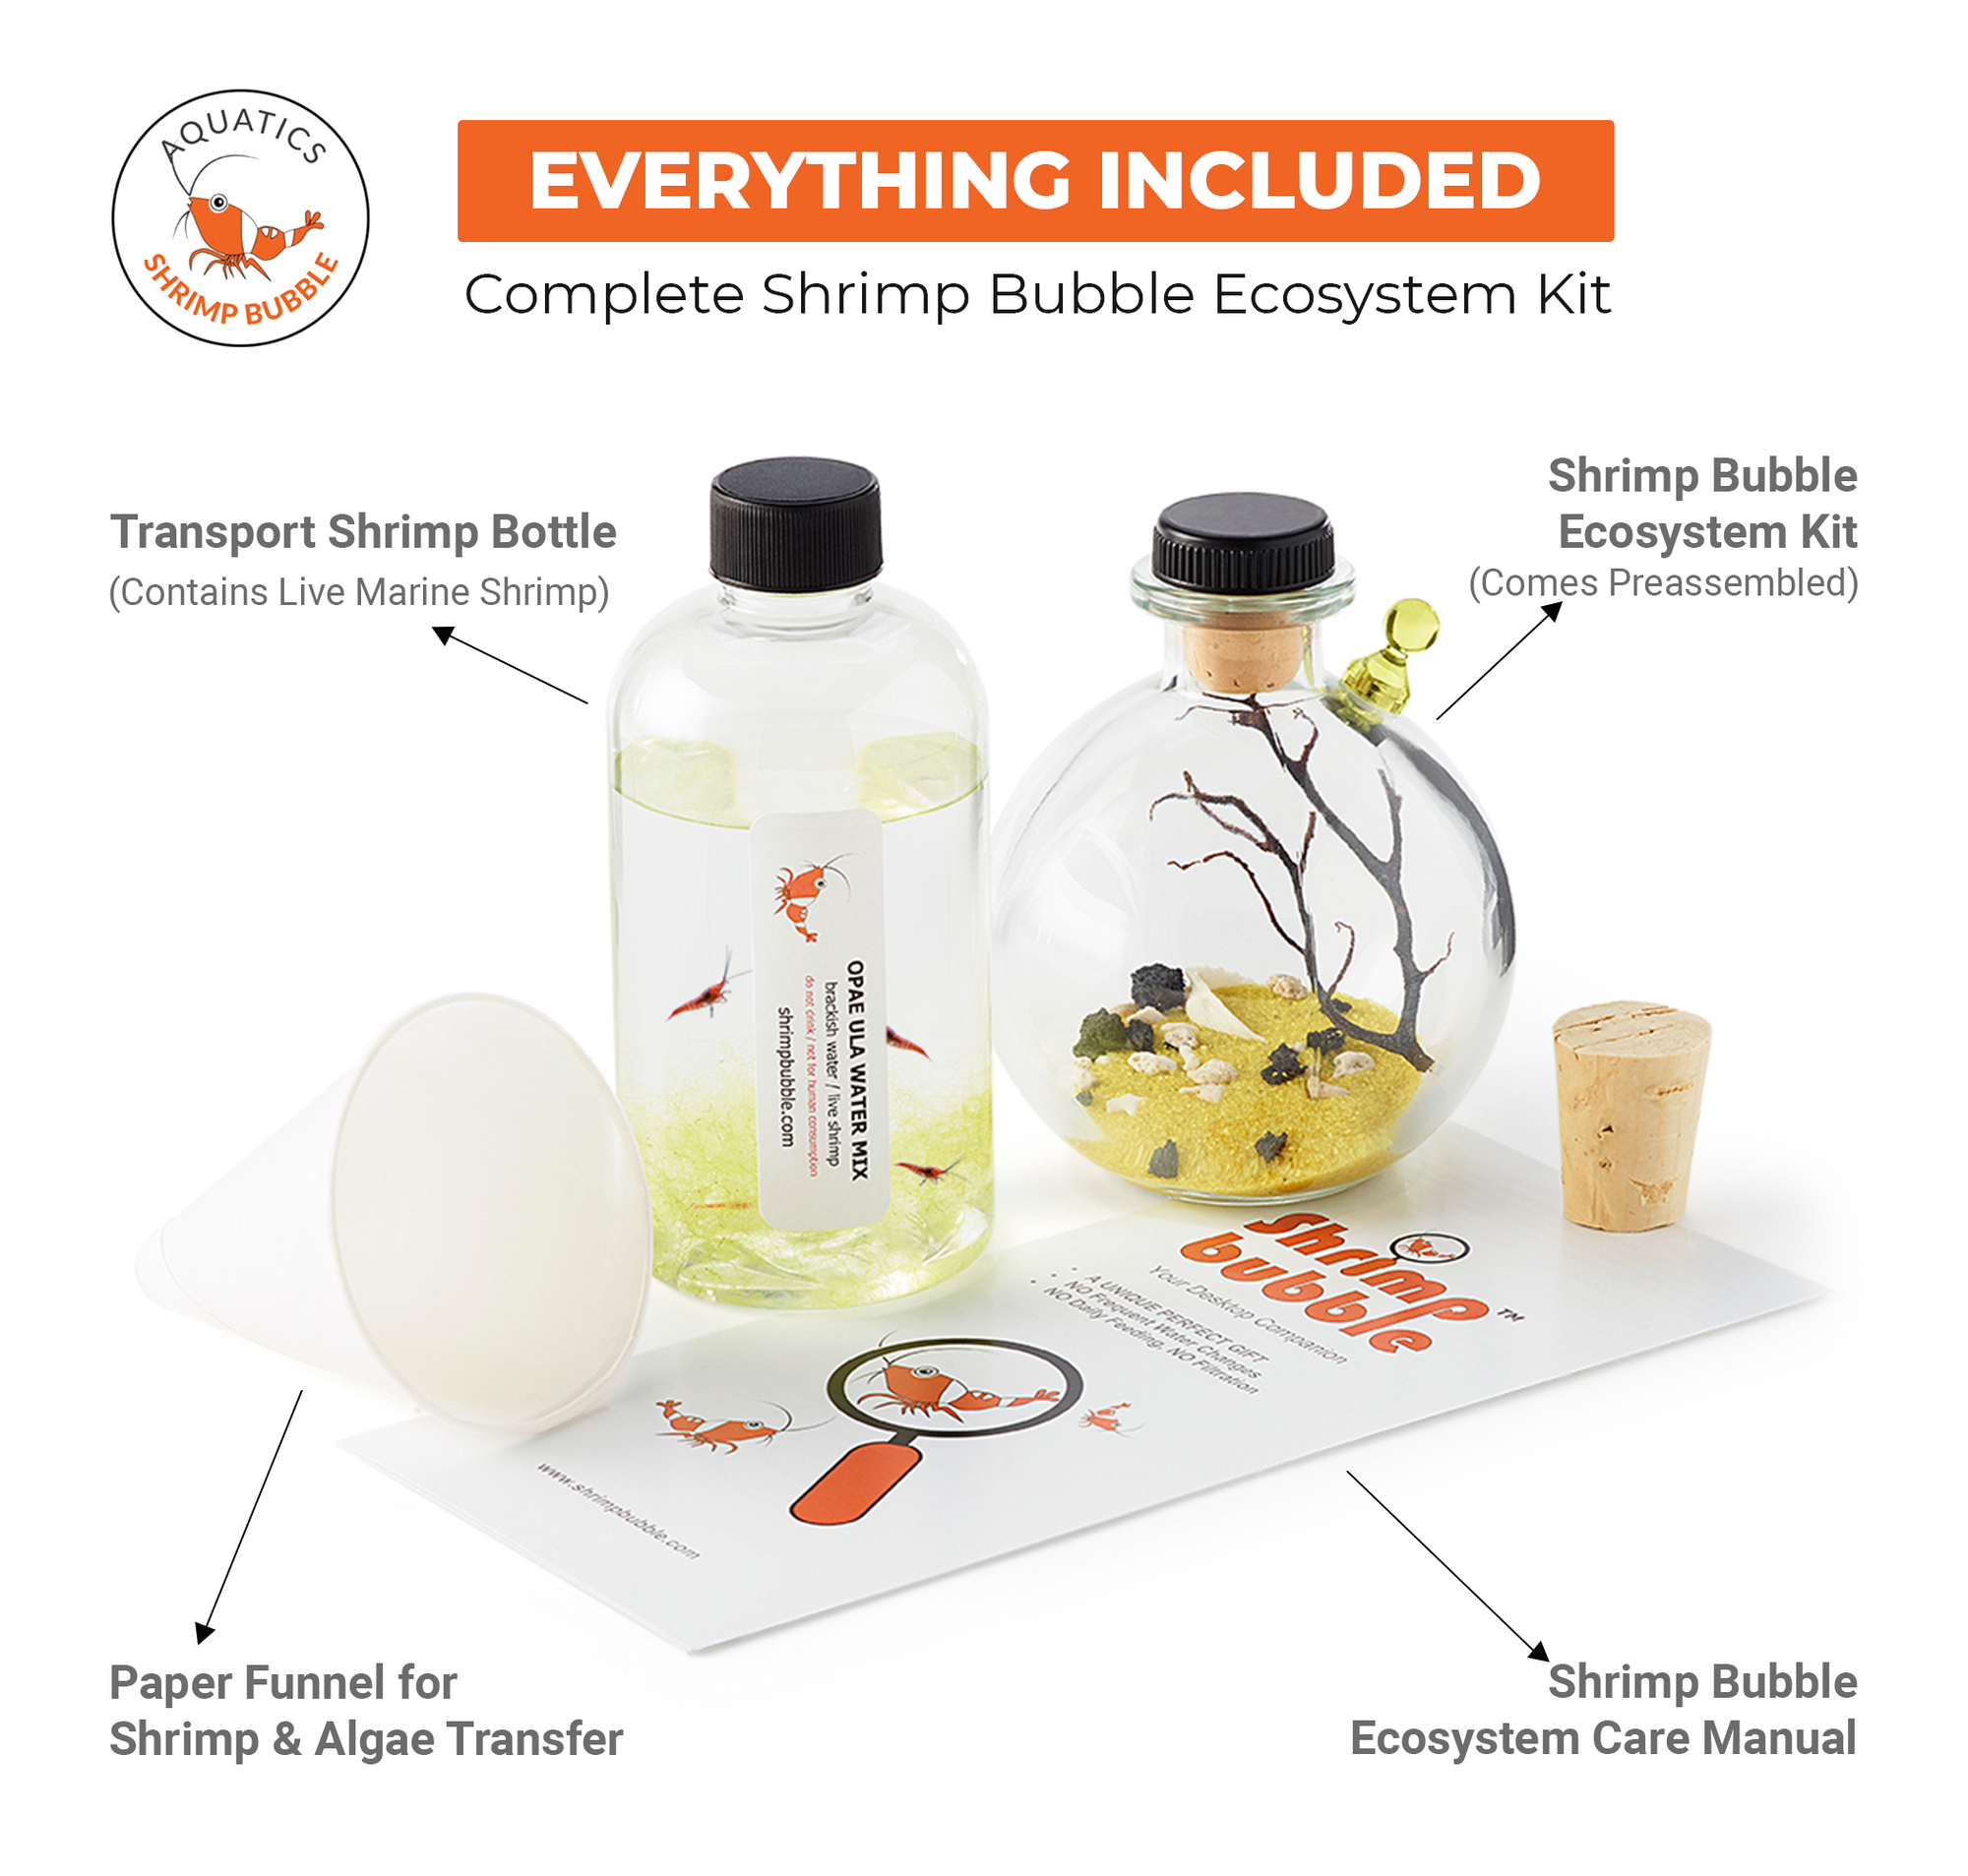 Shrimp Bubble Ecosystem